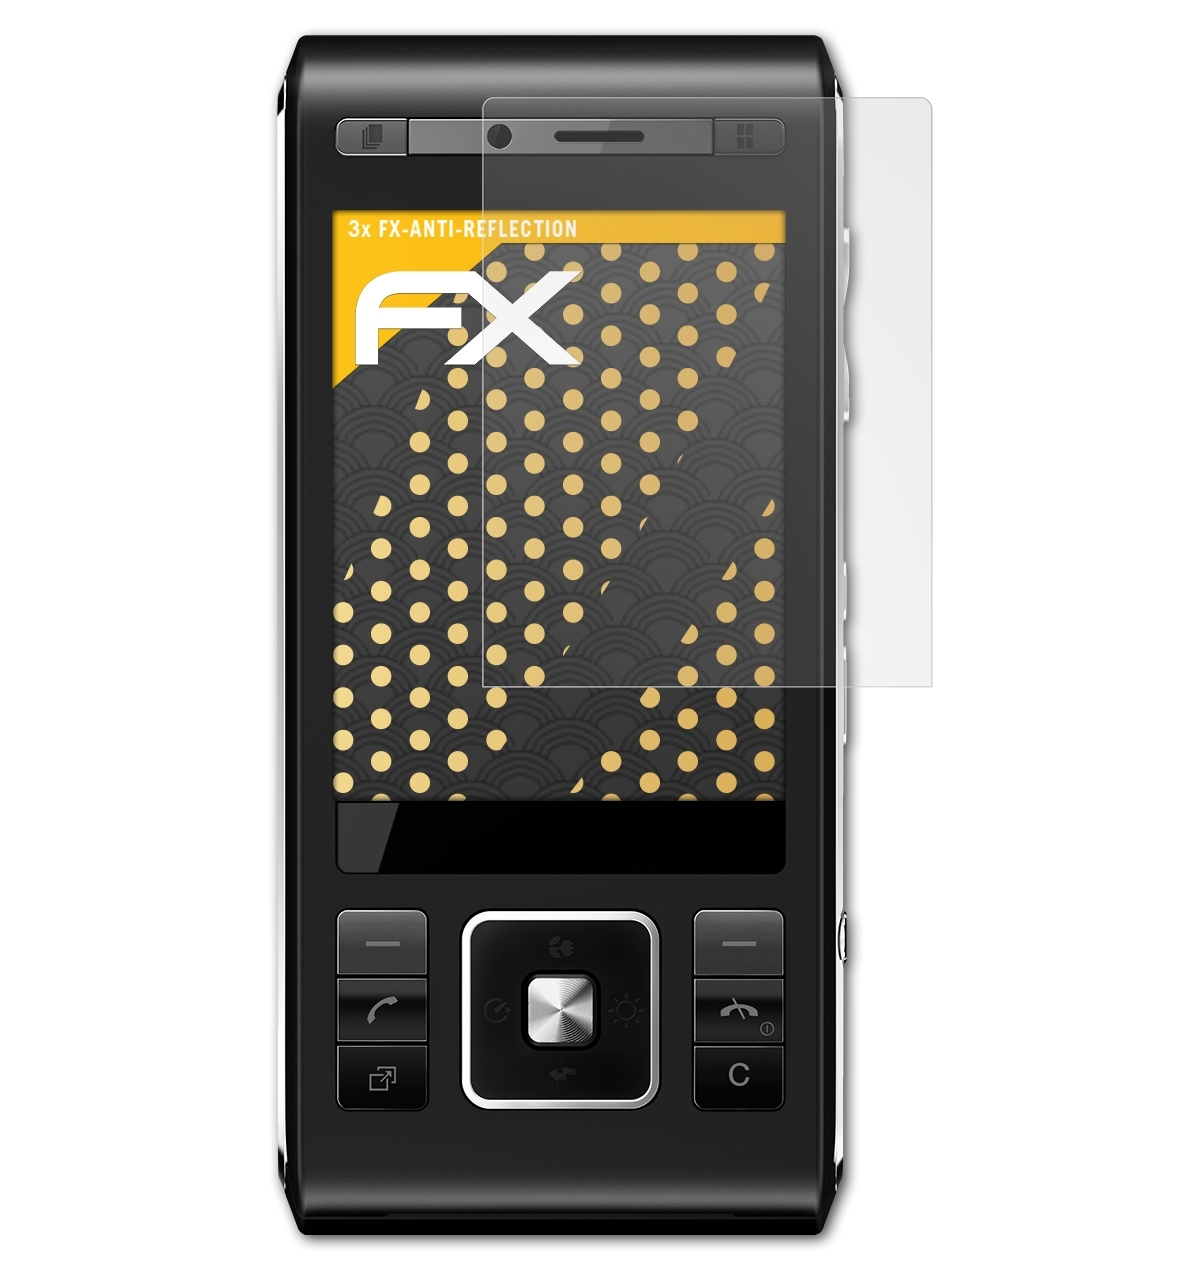 ATFOLIX 3x Sony-Ericsson FX-Antireflex Displayschutz(für C905)